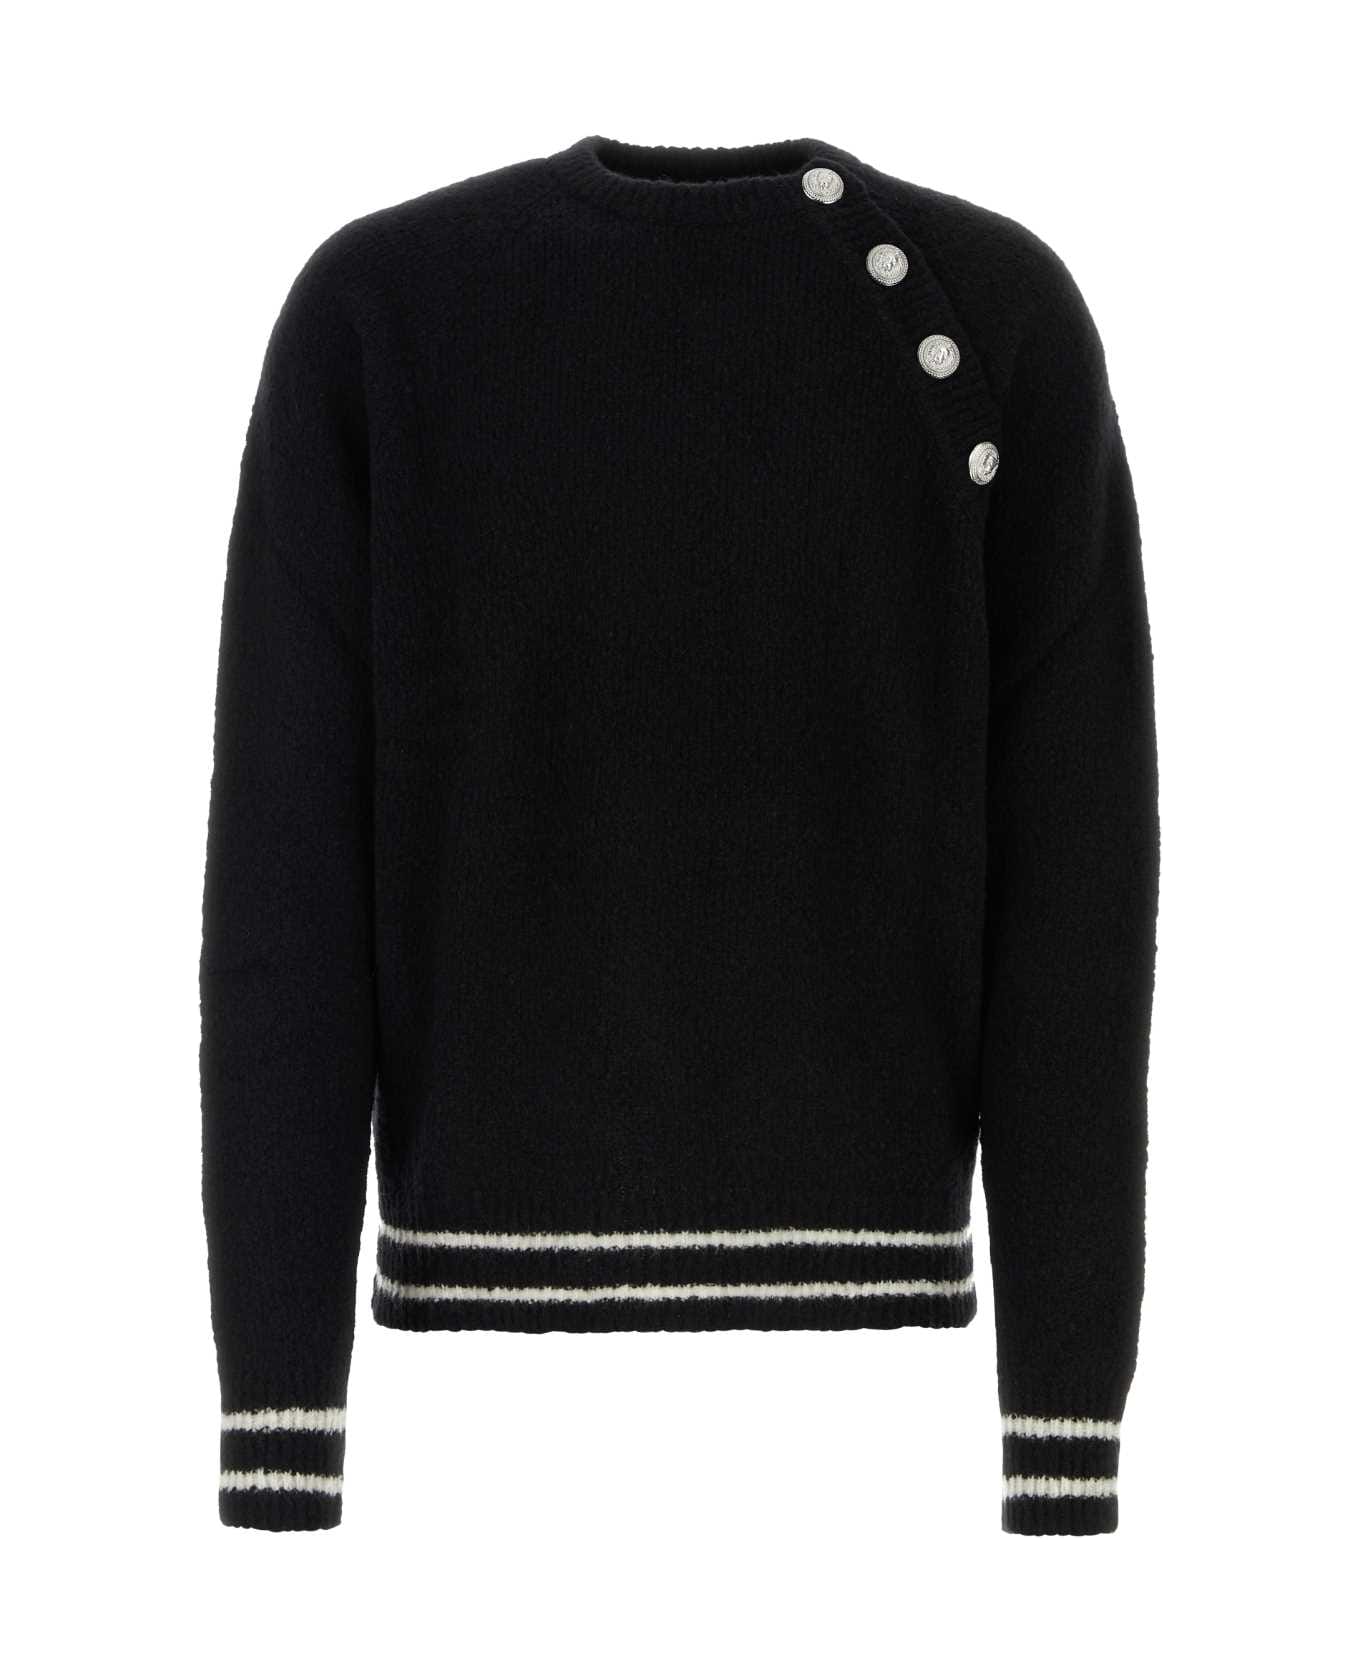 Balmain Black Wool Blend Sweater - 0PANOIR ニットウェア